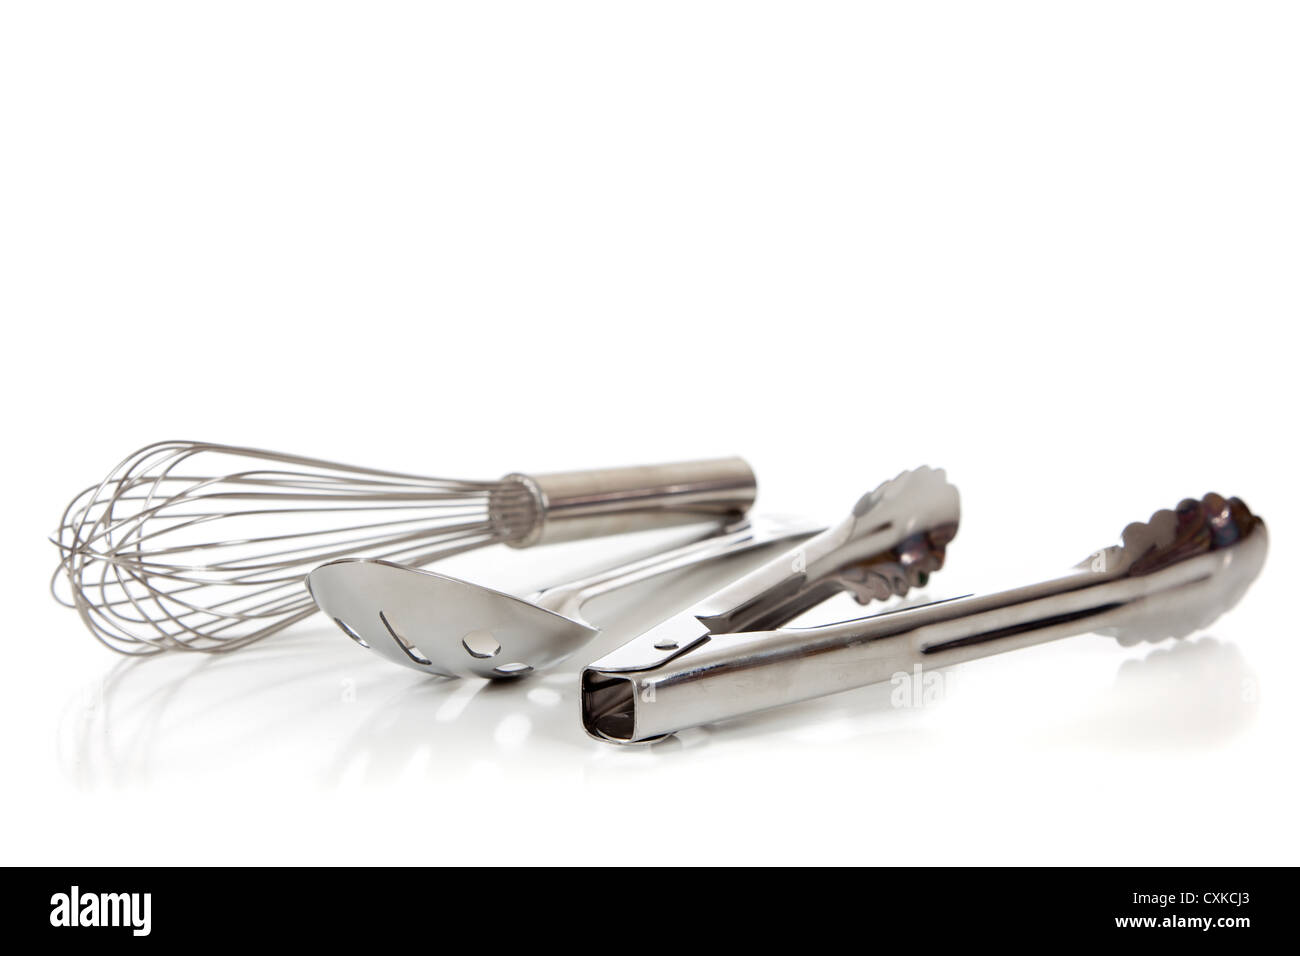 Argento utensili da cucina inclusi frusta, tong e cucchiaio su uno sfondo bianco con spazio di copia Foto Stock